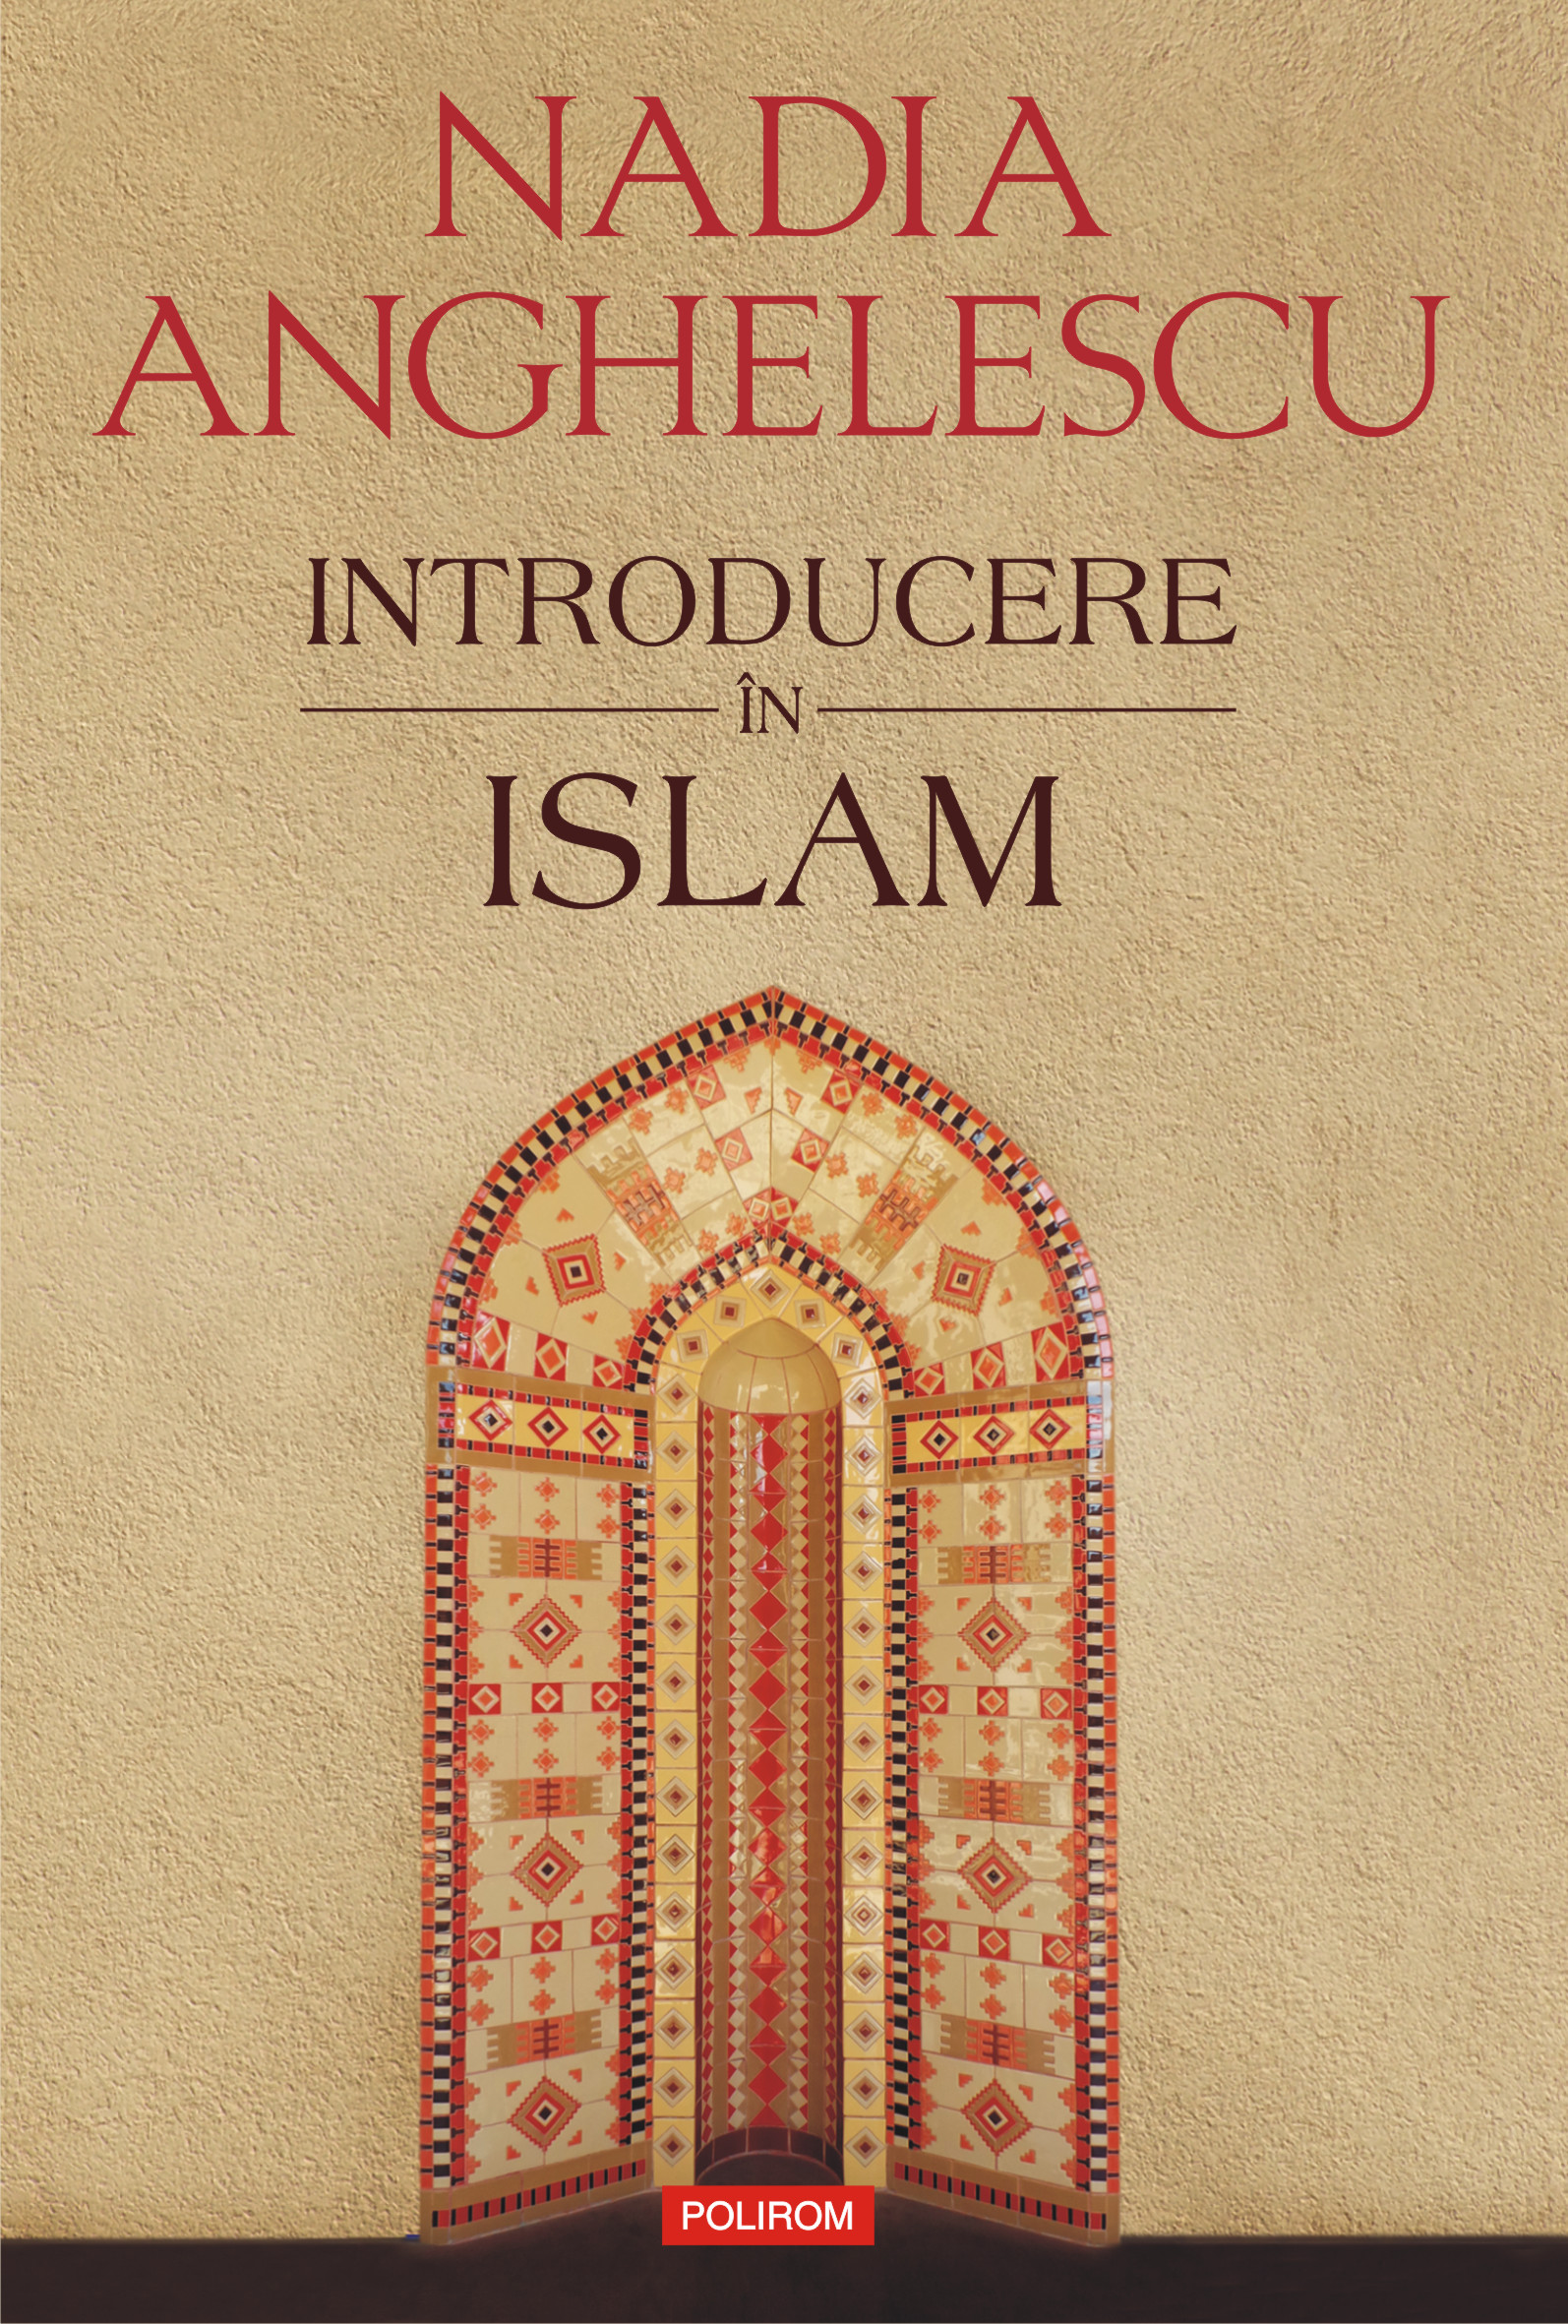 eBook Introducere in islam - Nadia Anghelescu